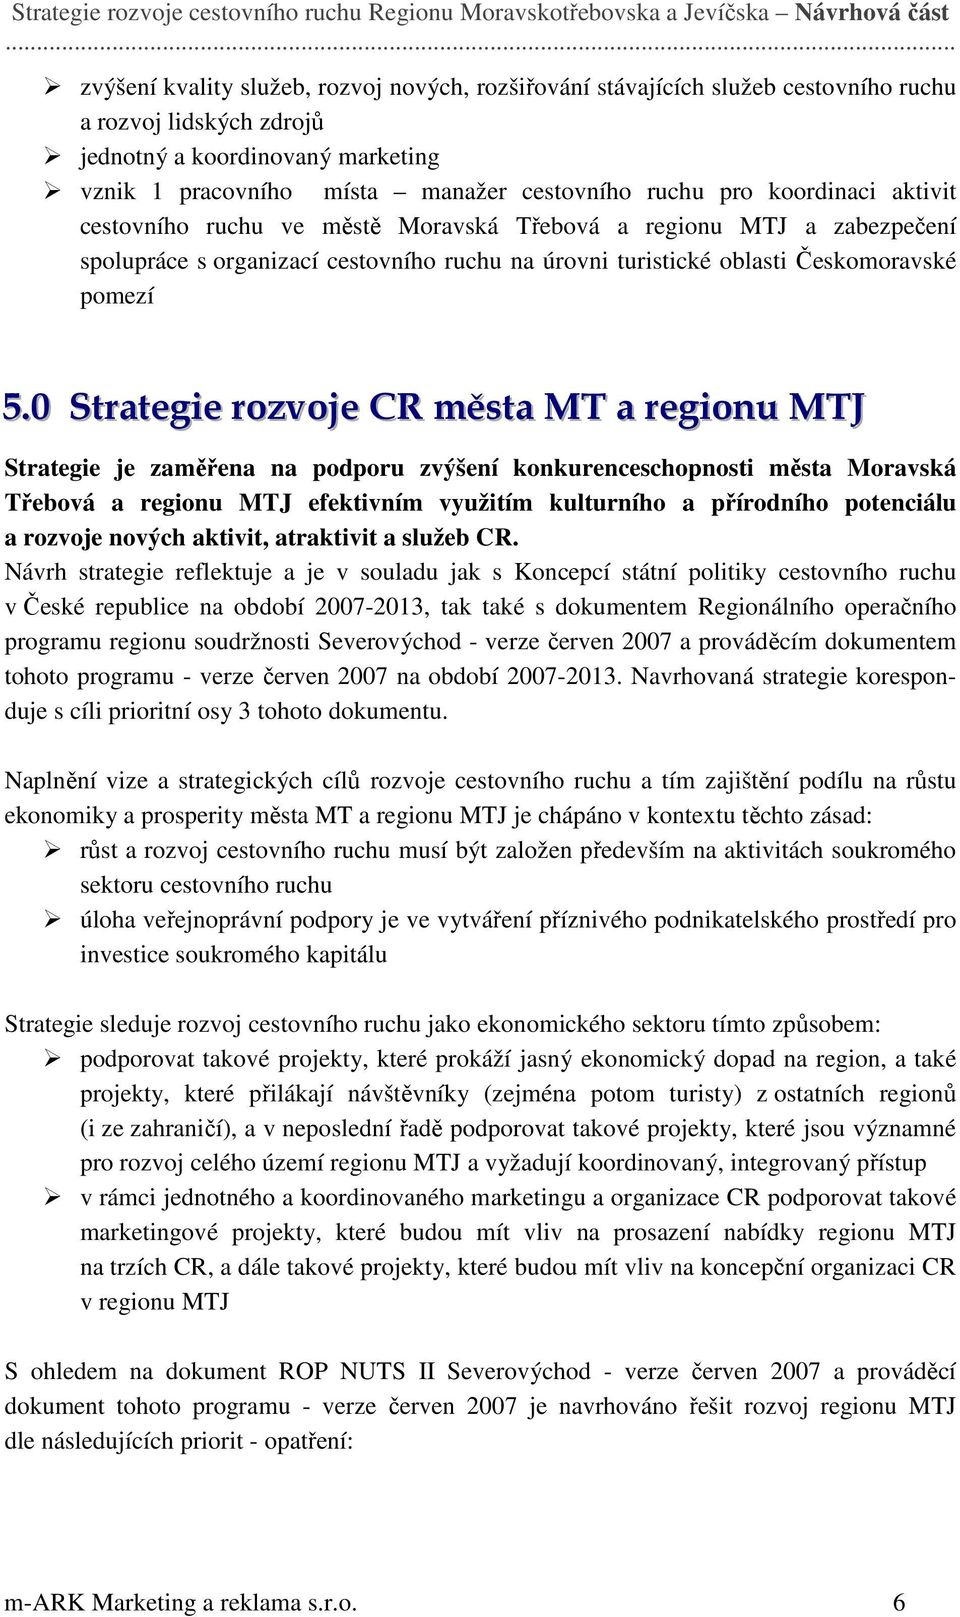 .0 Strategie rozvoje CR města MT a regionu MTJ Strategie je zaměřena na podporu zvýšení konkurenceschopnosti města Moravská Třebová a regionu MTJ efektivním využitím kulturního a přírodního